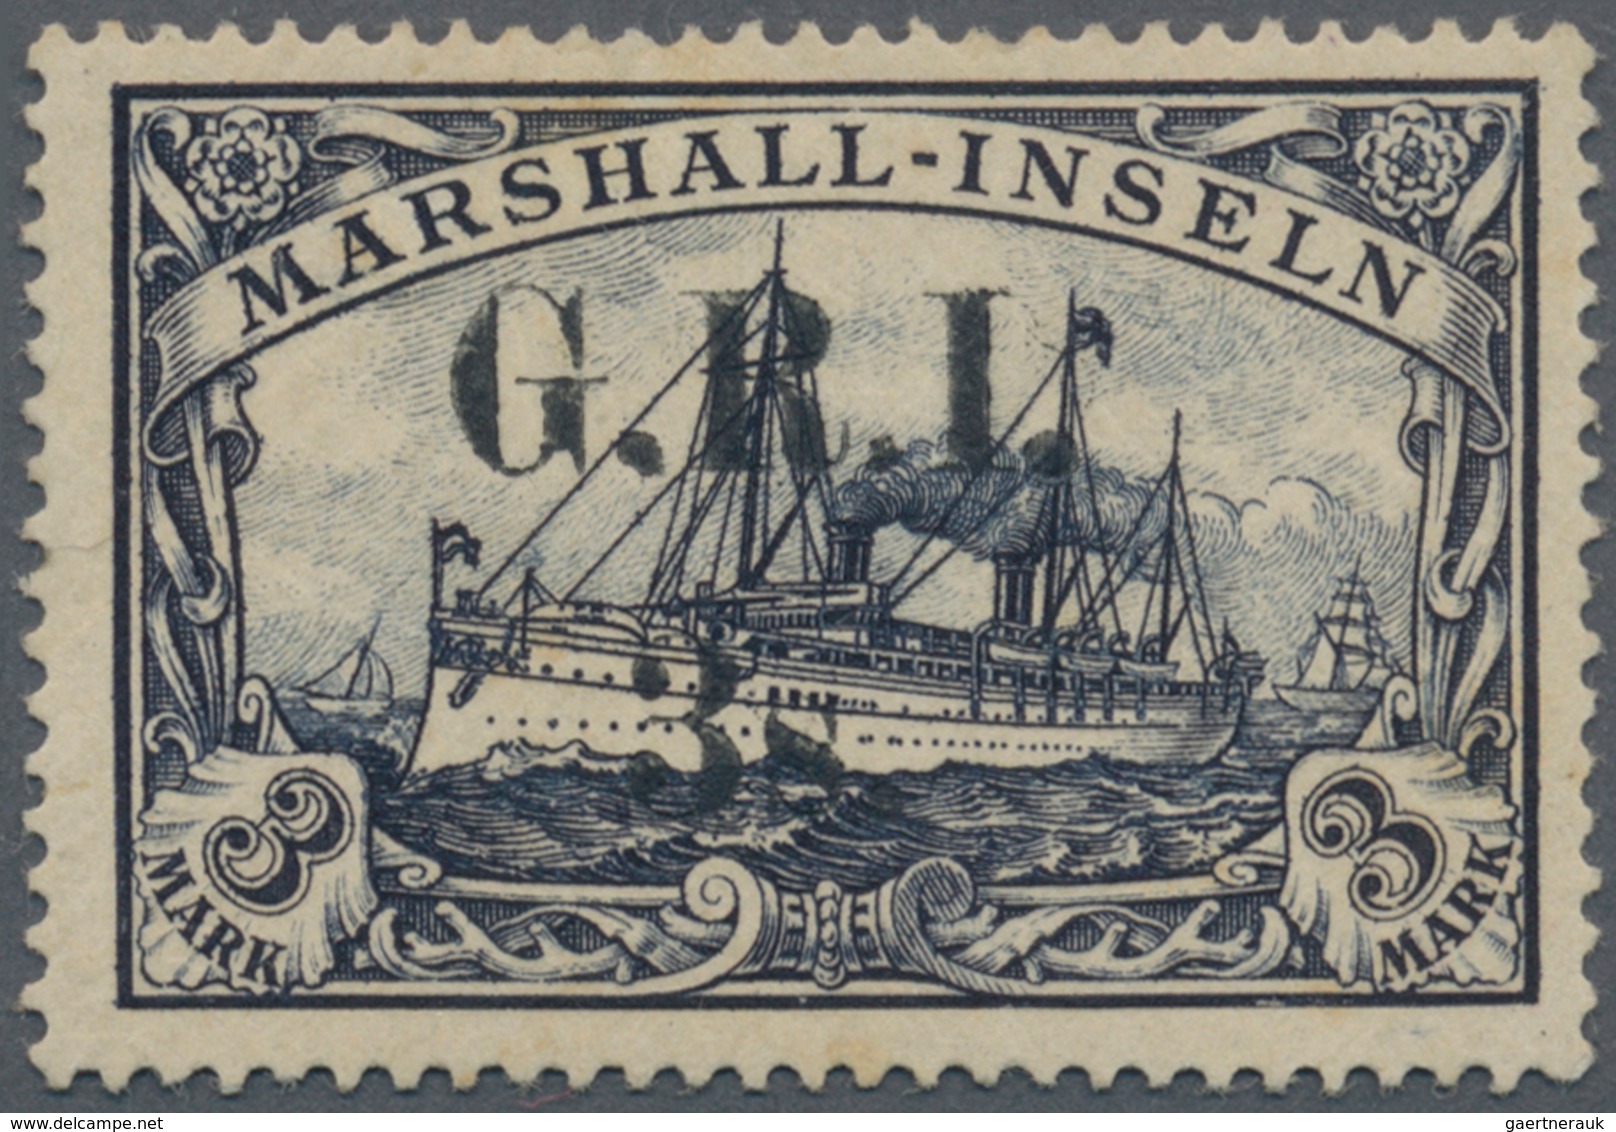 Deutsche Kolonien - Marshall-Inseln - Britische Besetzung: 1914: 3 S. Auf 3 M. Violettschwarz, Mit A - Marshalleilanden